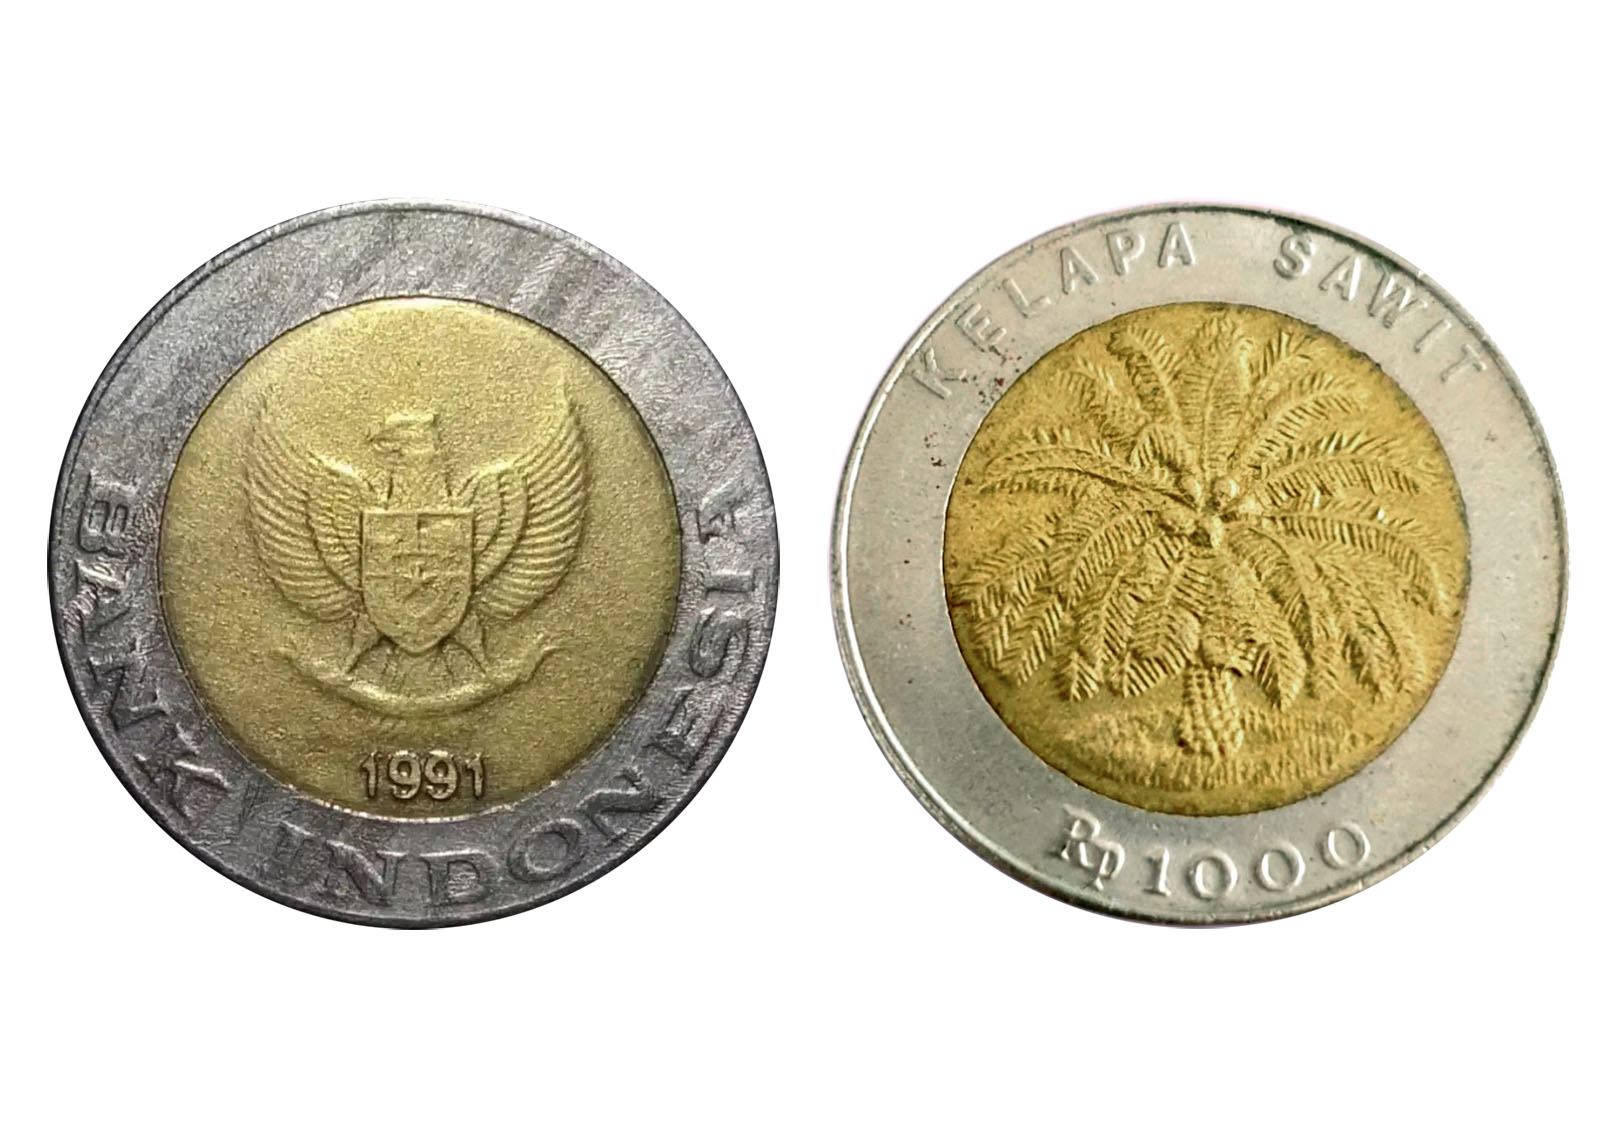 Beberapa Uang Koin Kuno Dihargai Hingga Miliaran Rupiah, Ini Penyebabnya